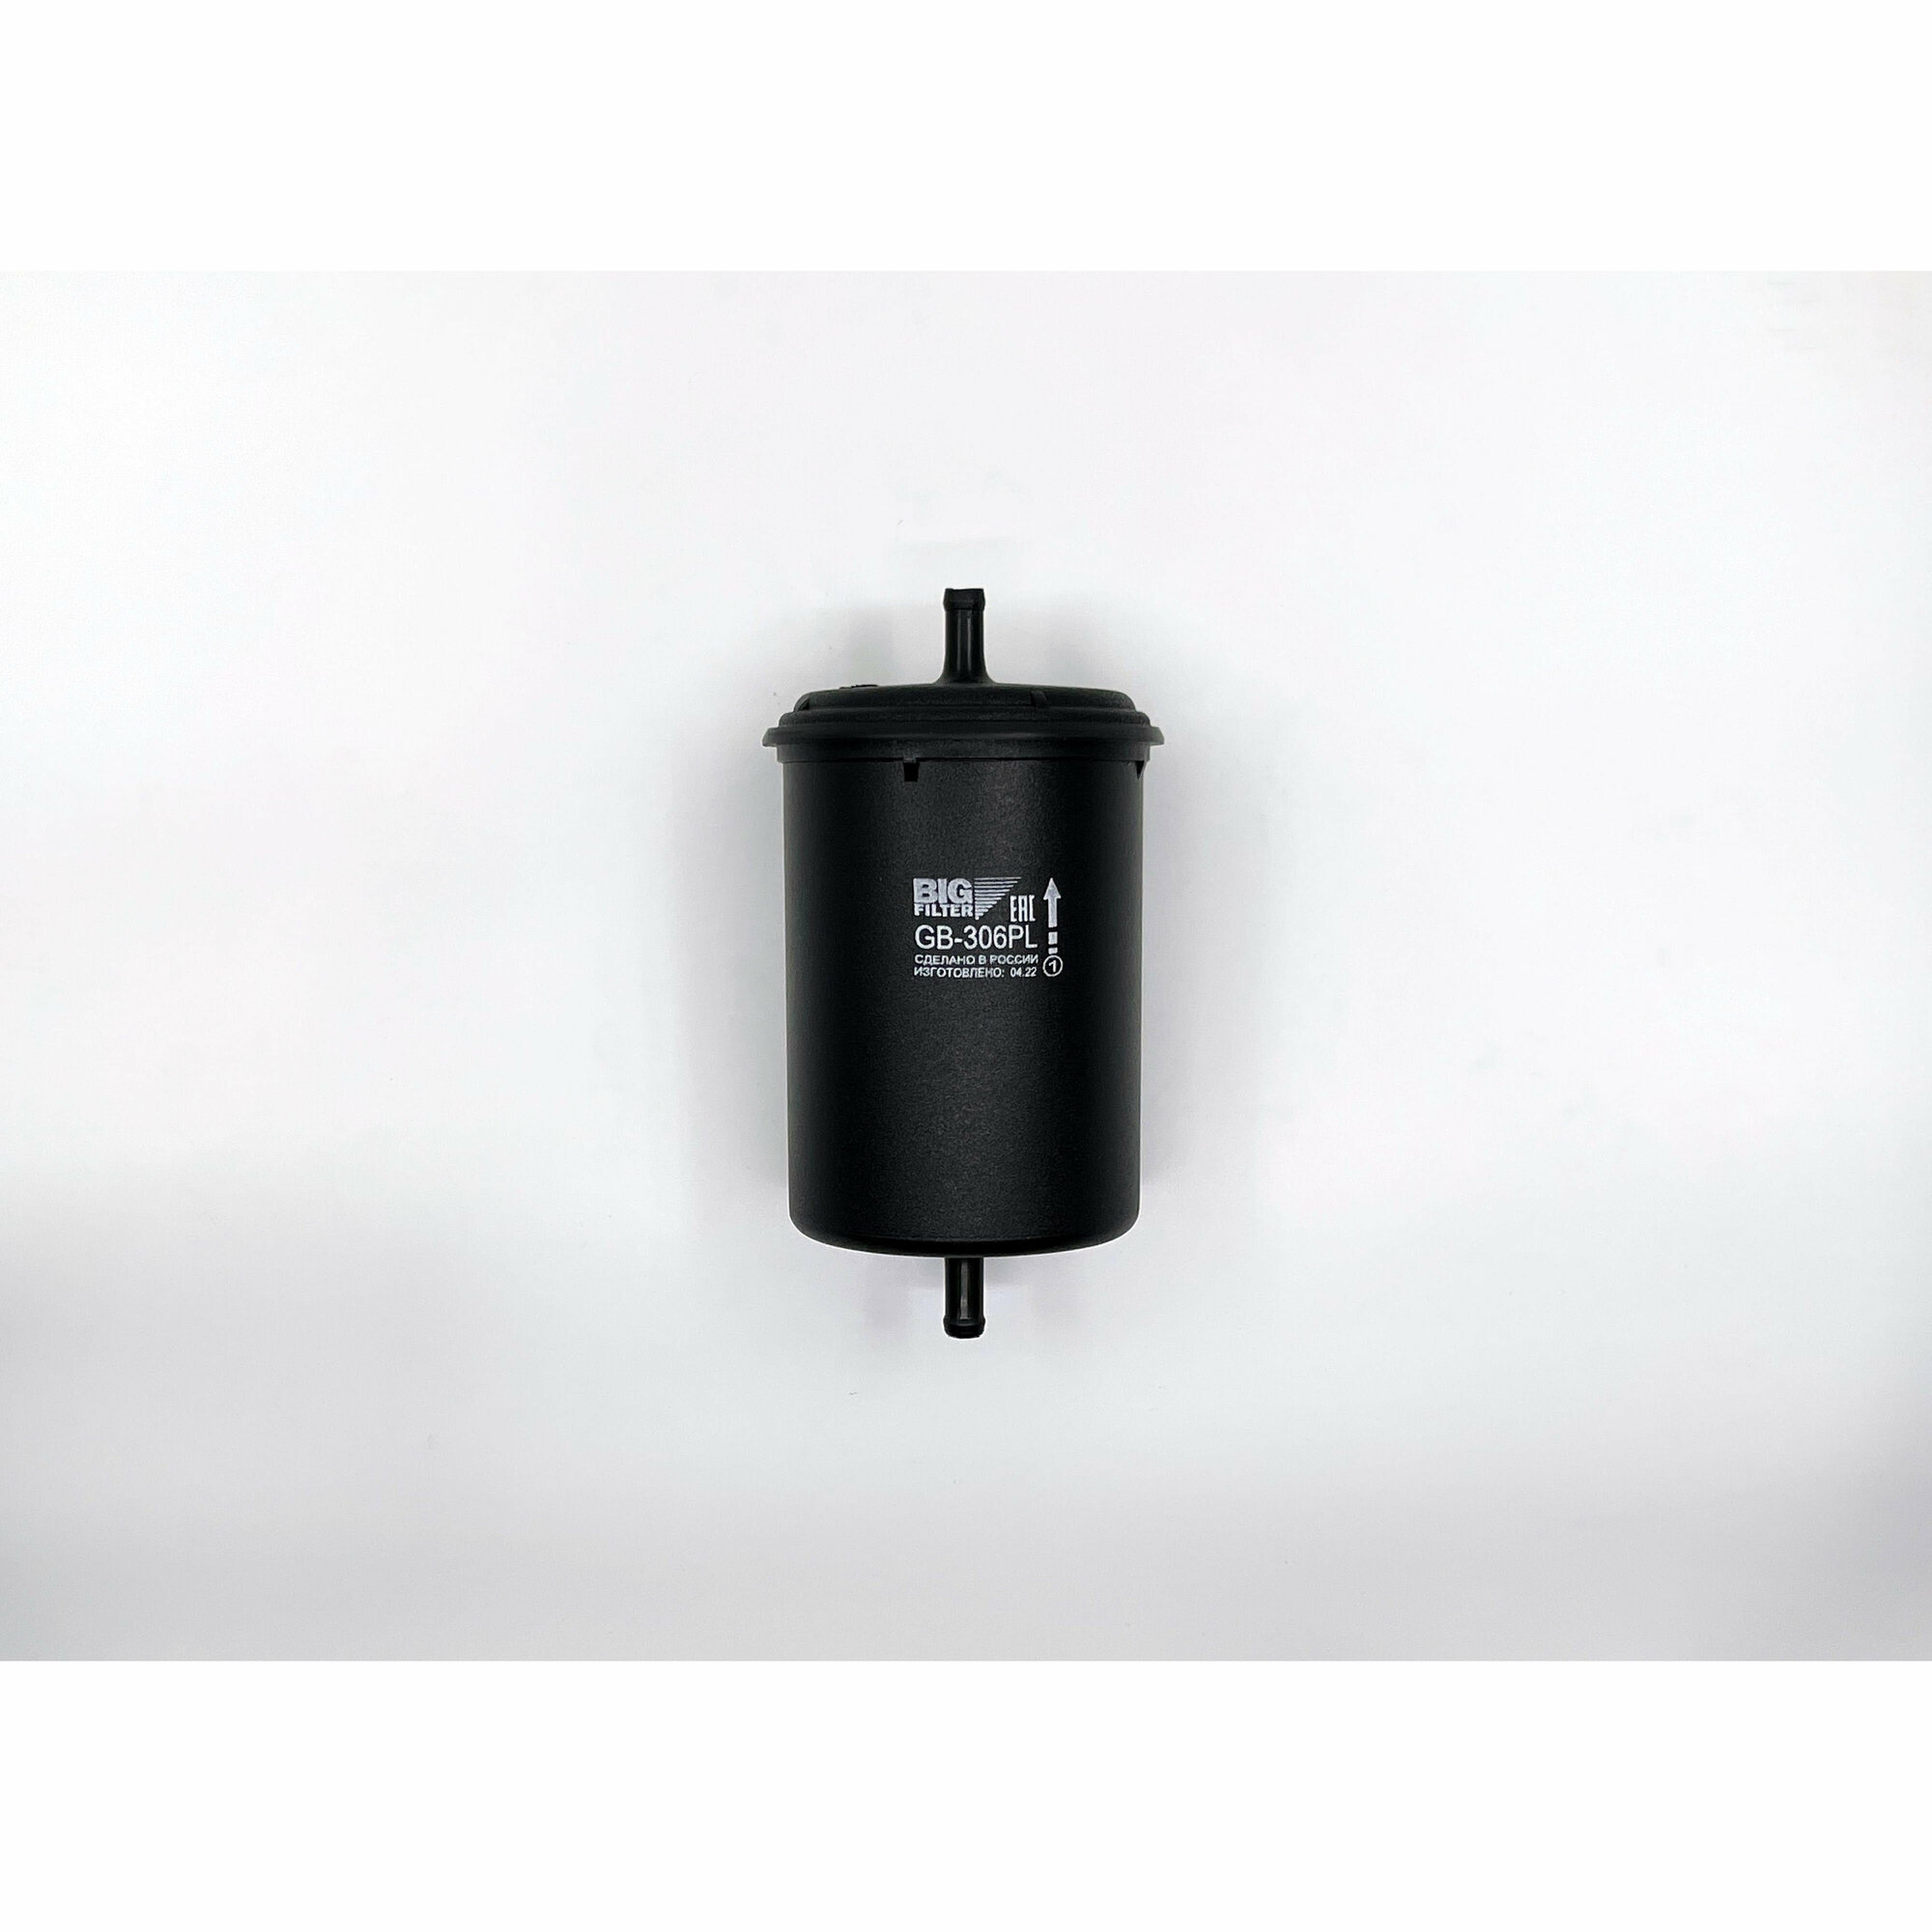 Фильтр топливный BIG FILTER GB-306PL WK830 WK830/7